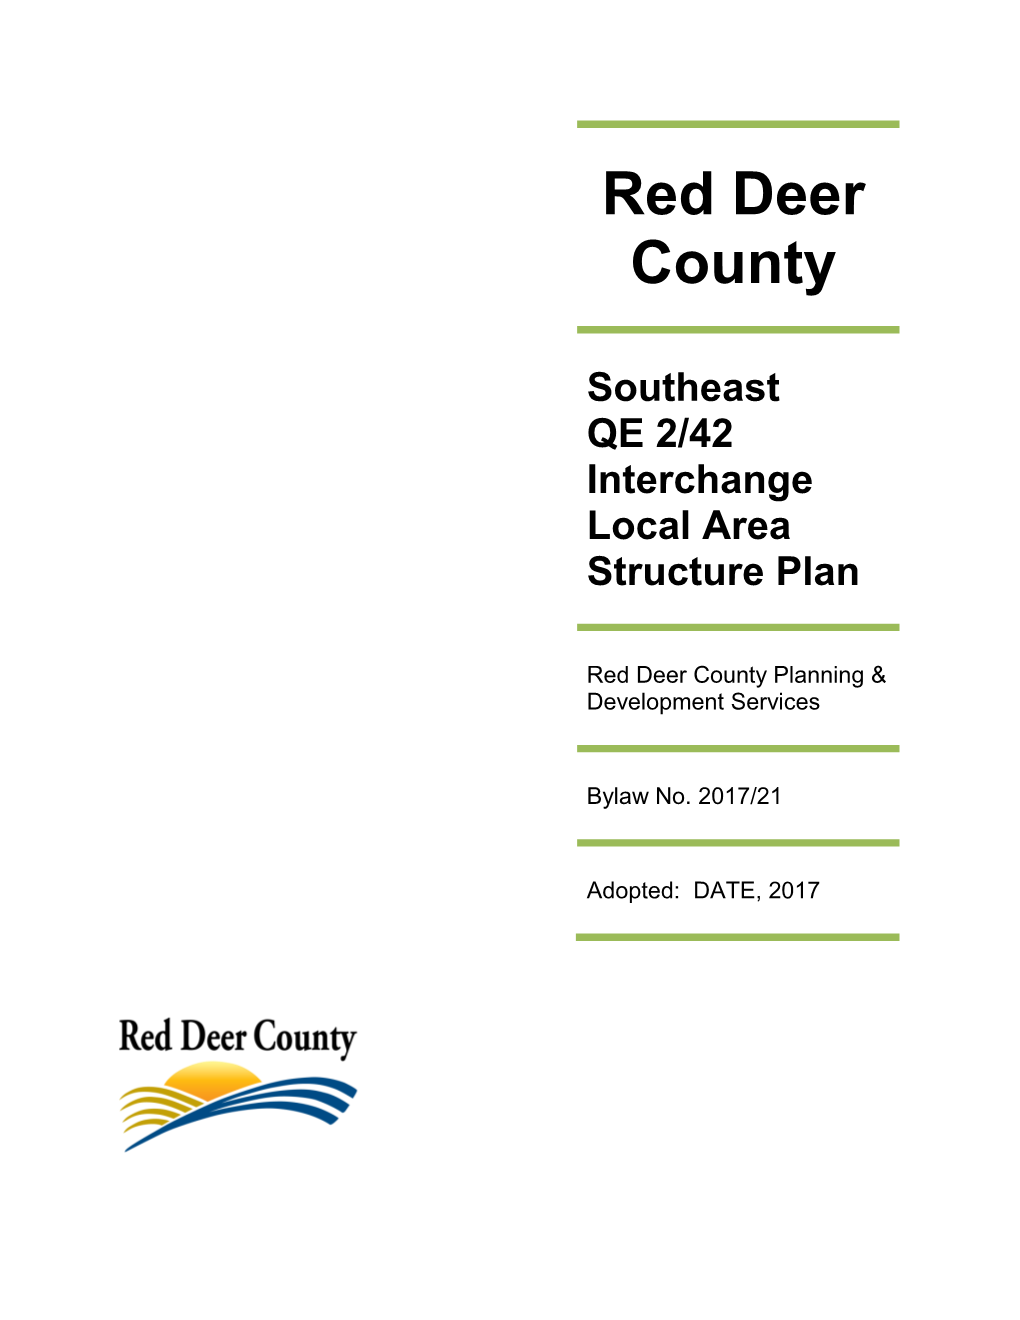 Southeast QE 2/42 Interchange Local Area Structure Plan